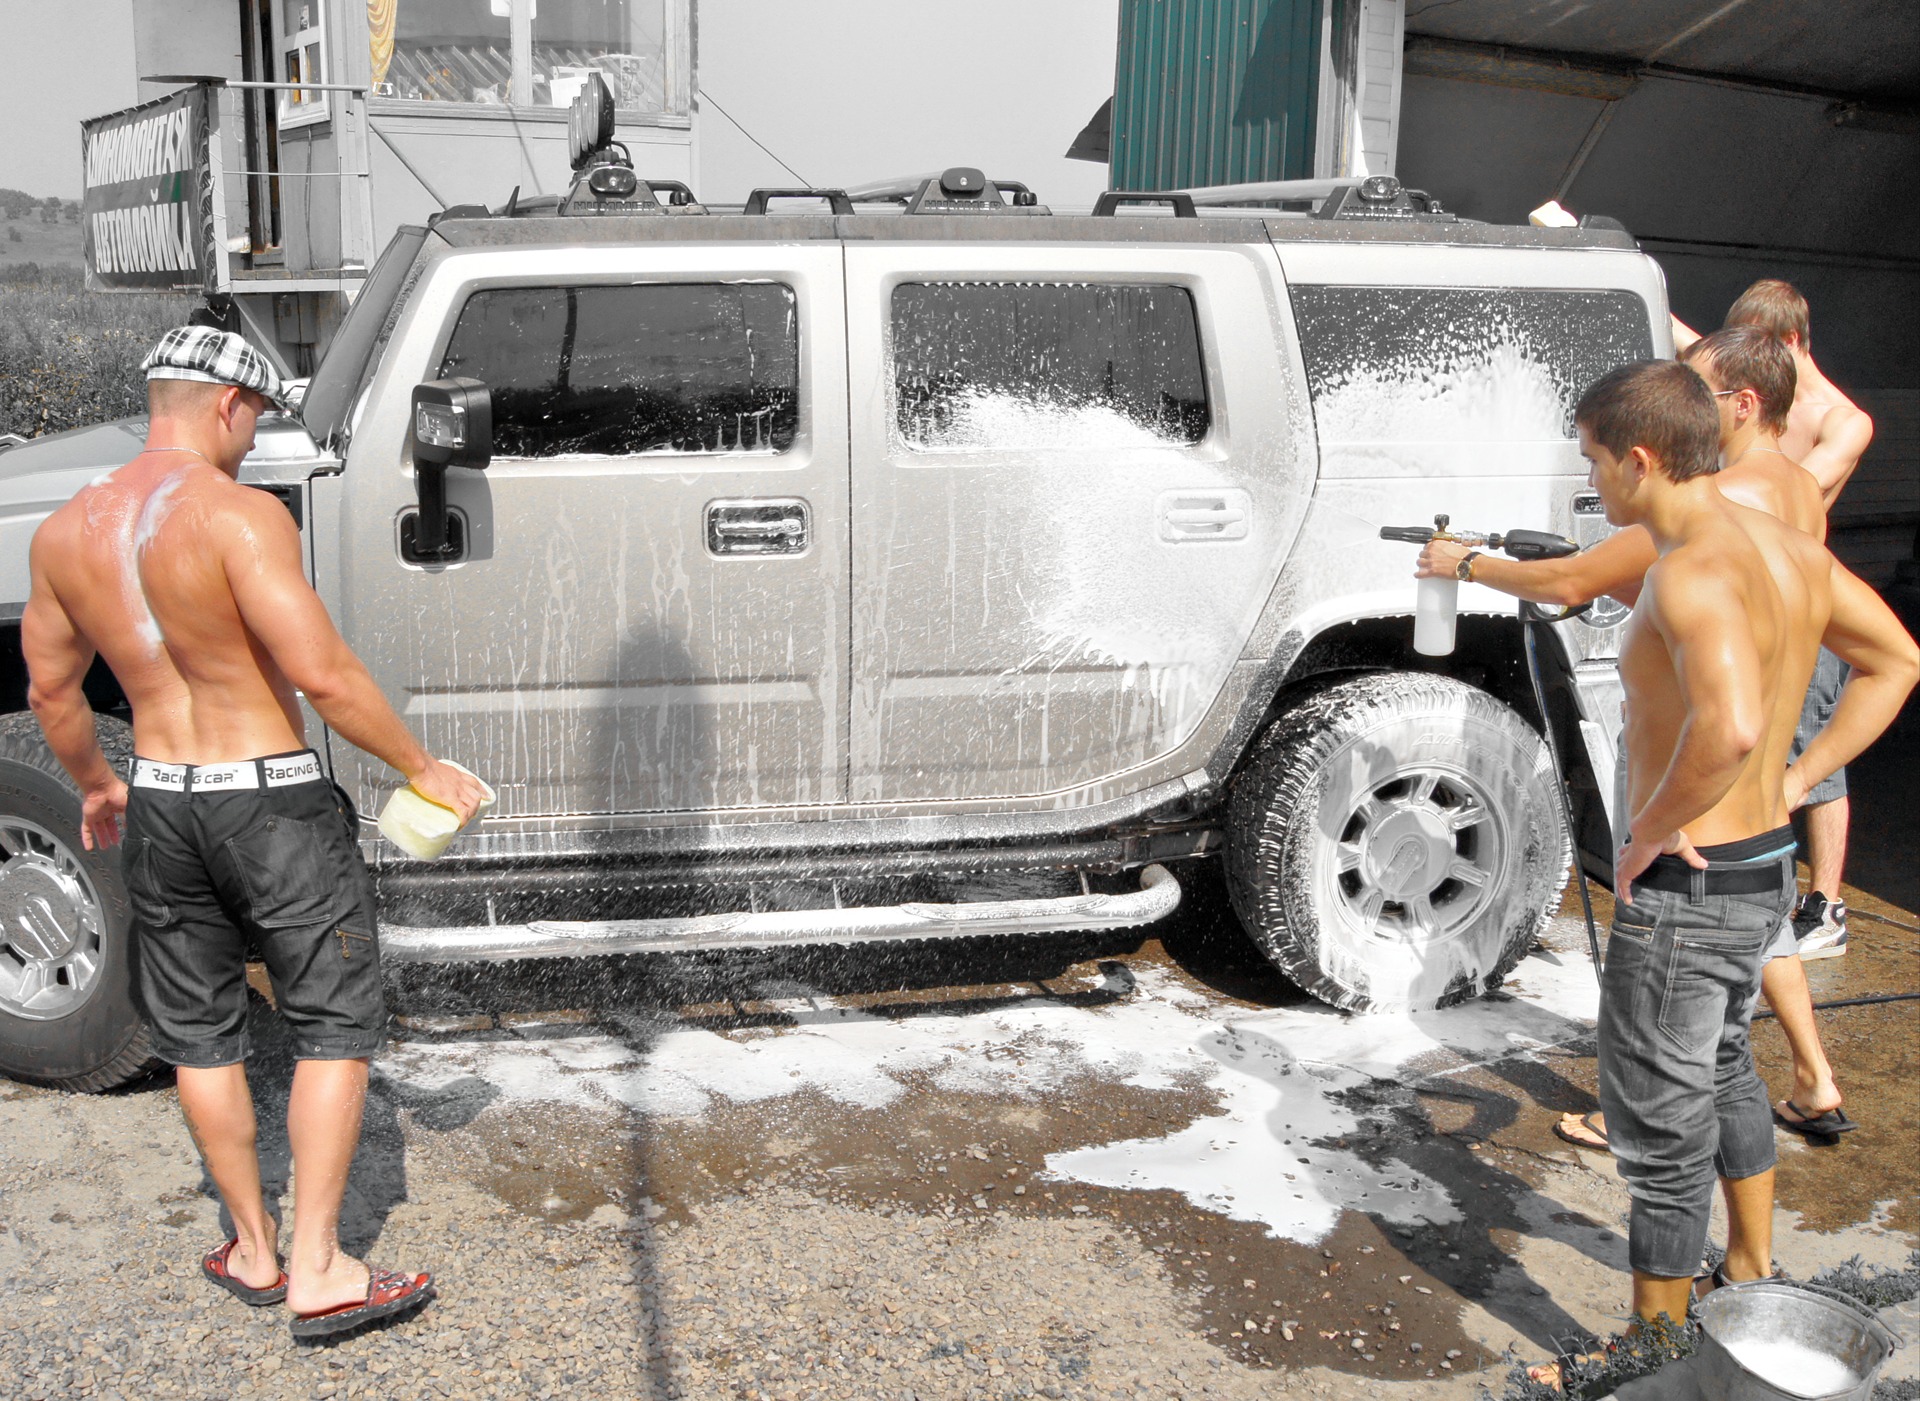 голые мужчины моют машину фото 52